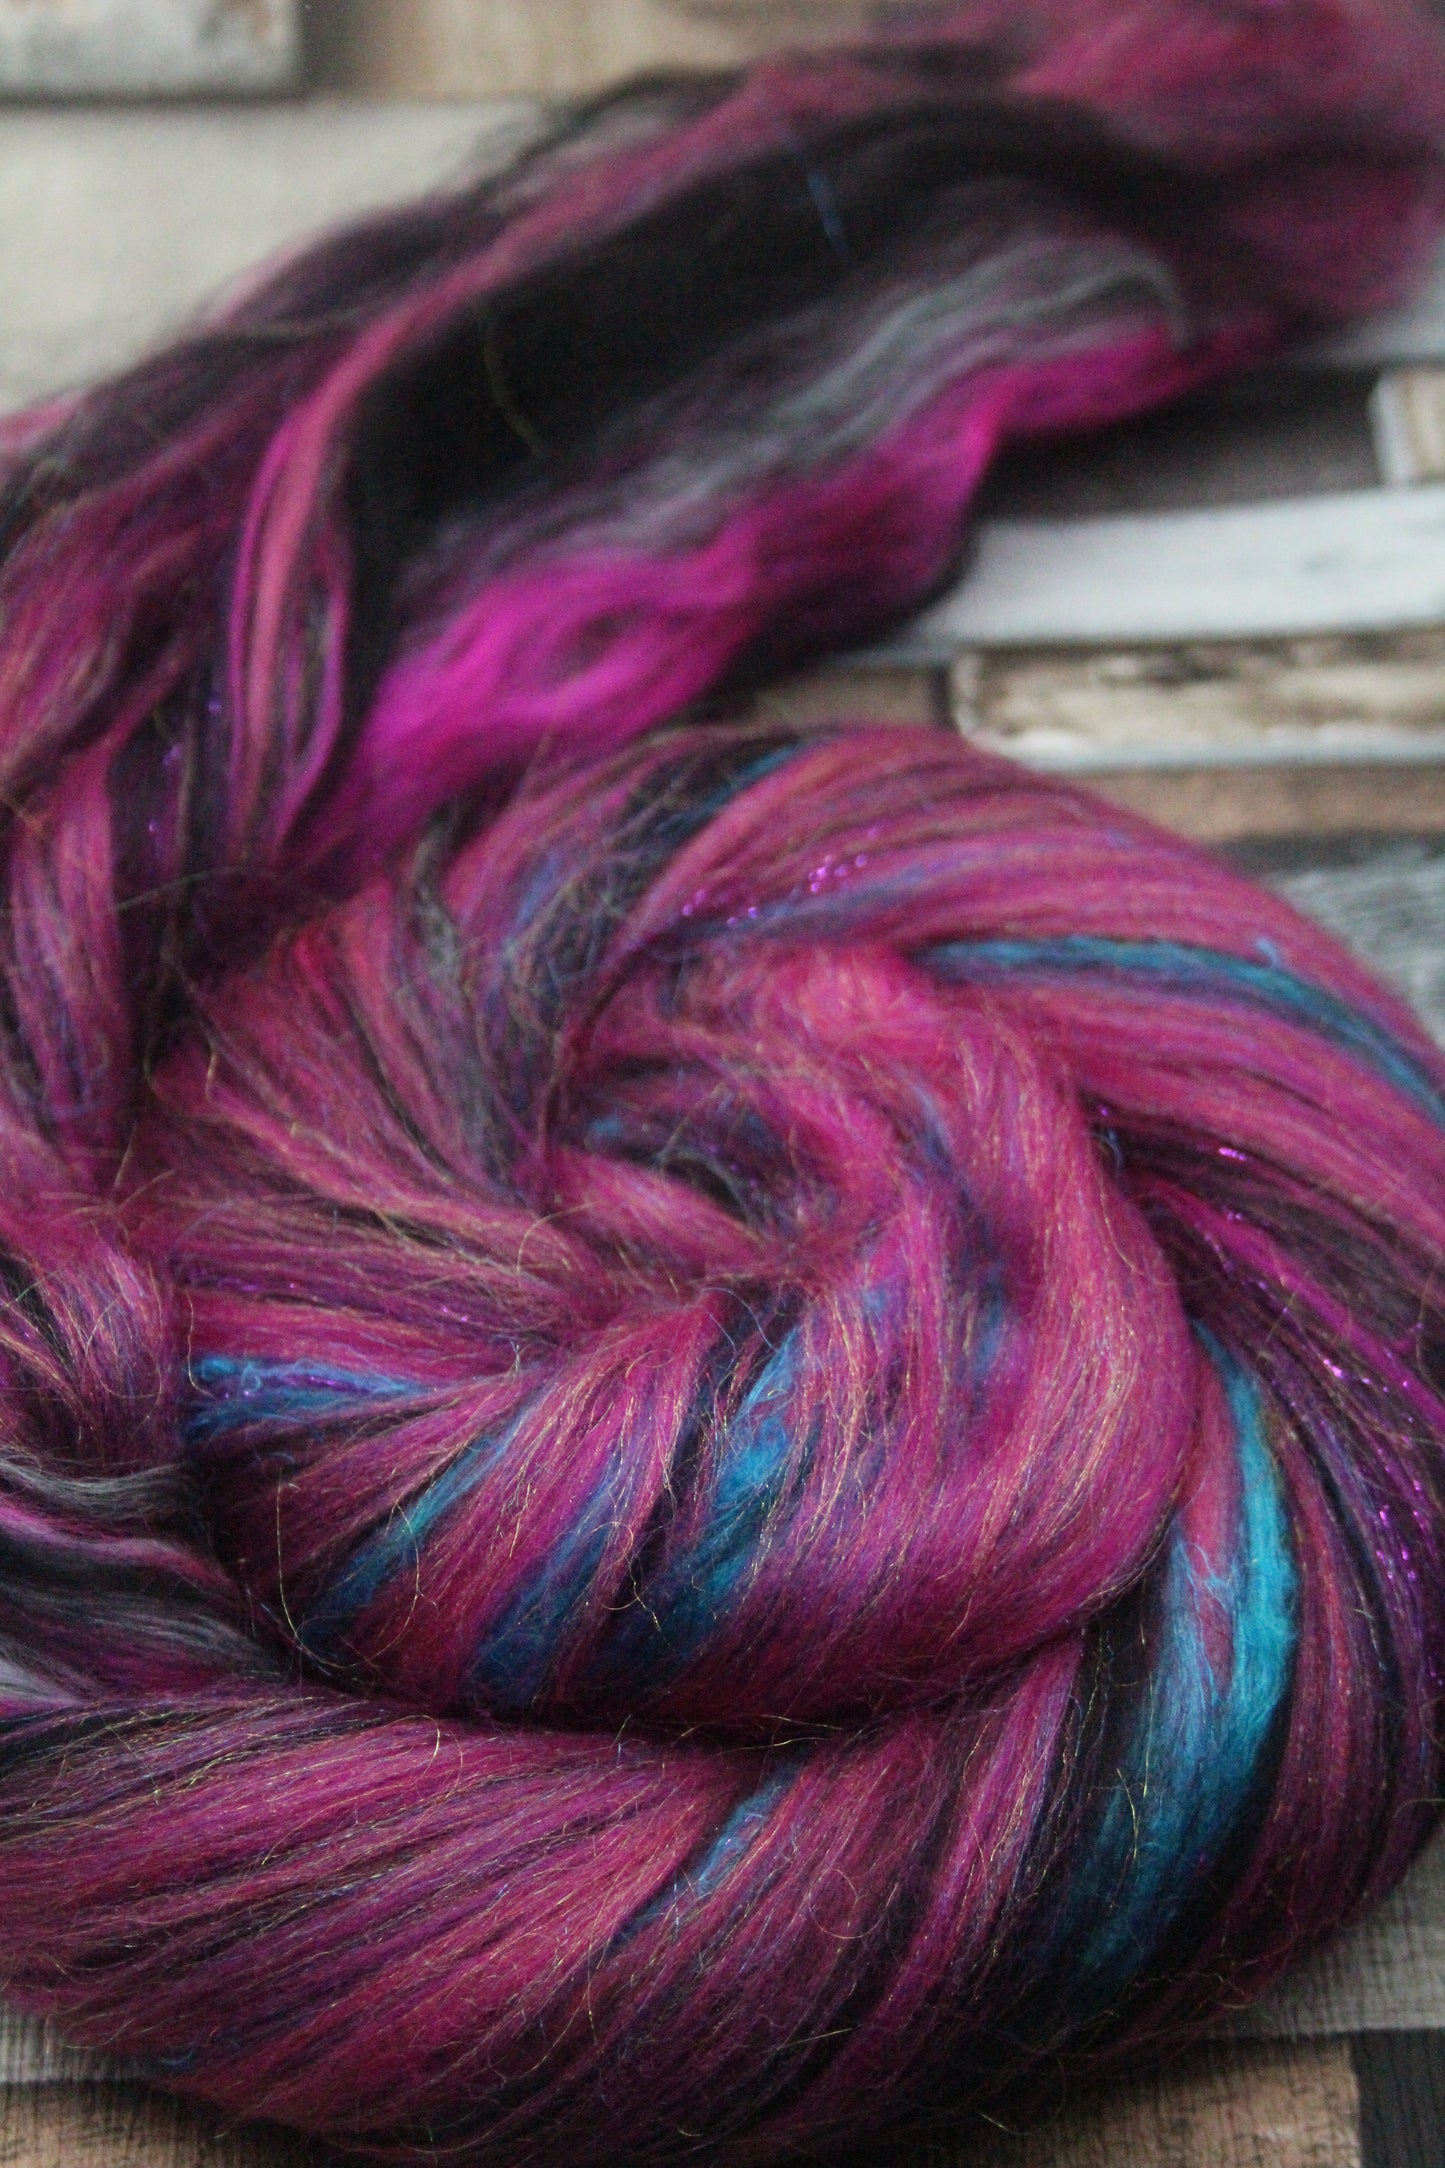 Merino Wool Blend - Pink Black - 25 grams / 0.8 oz  - Fibre for felting, weaving or spinning